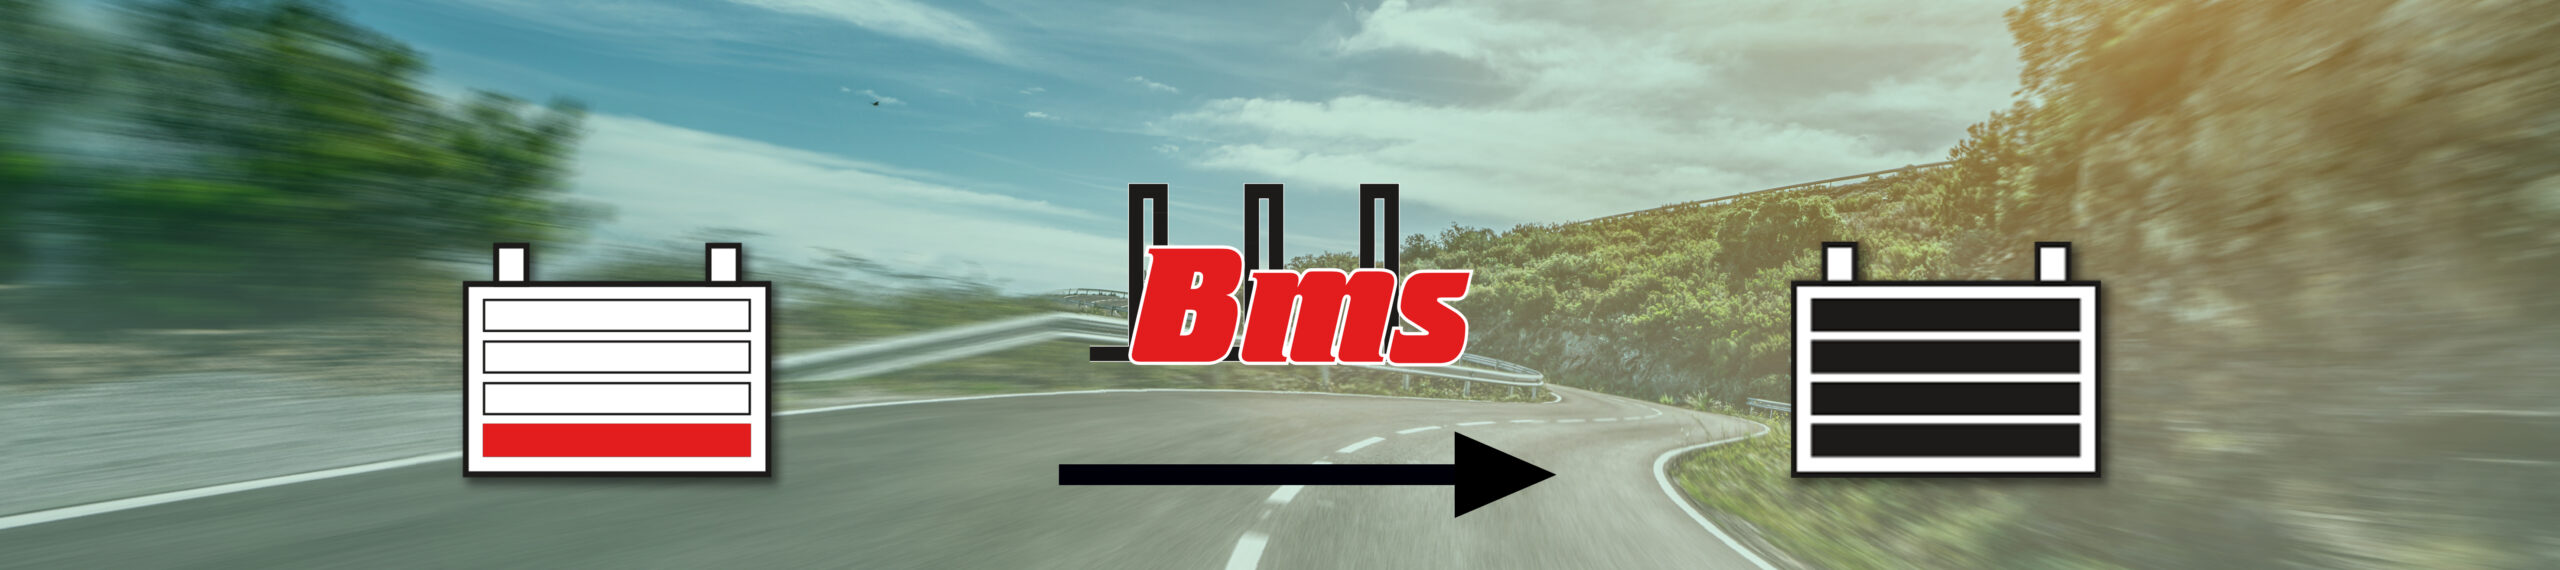 Sistema de gestión de batería BMS